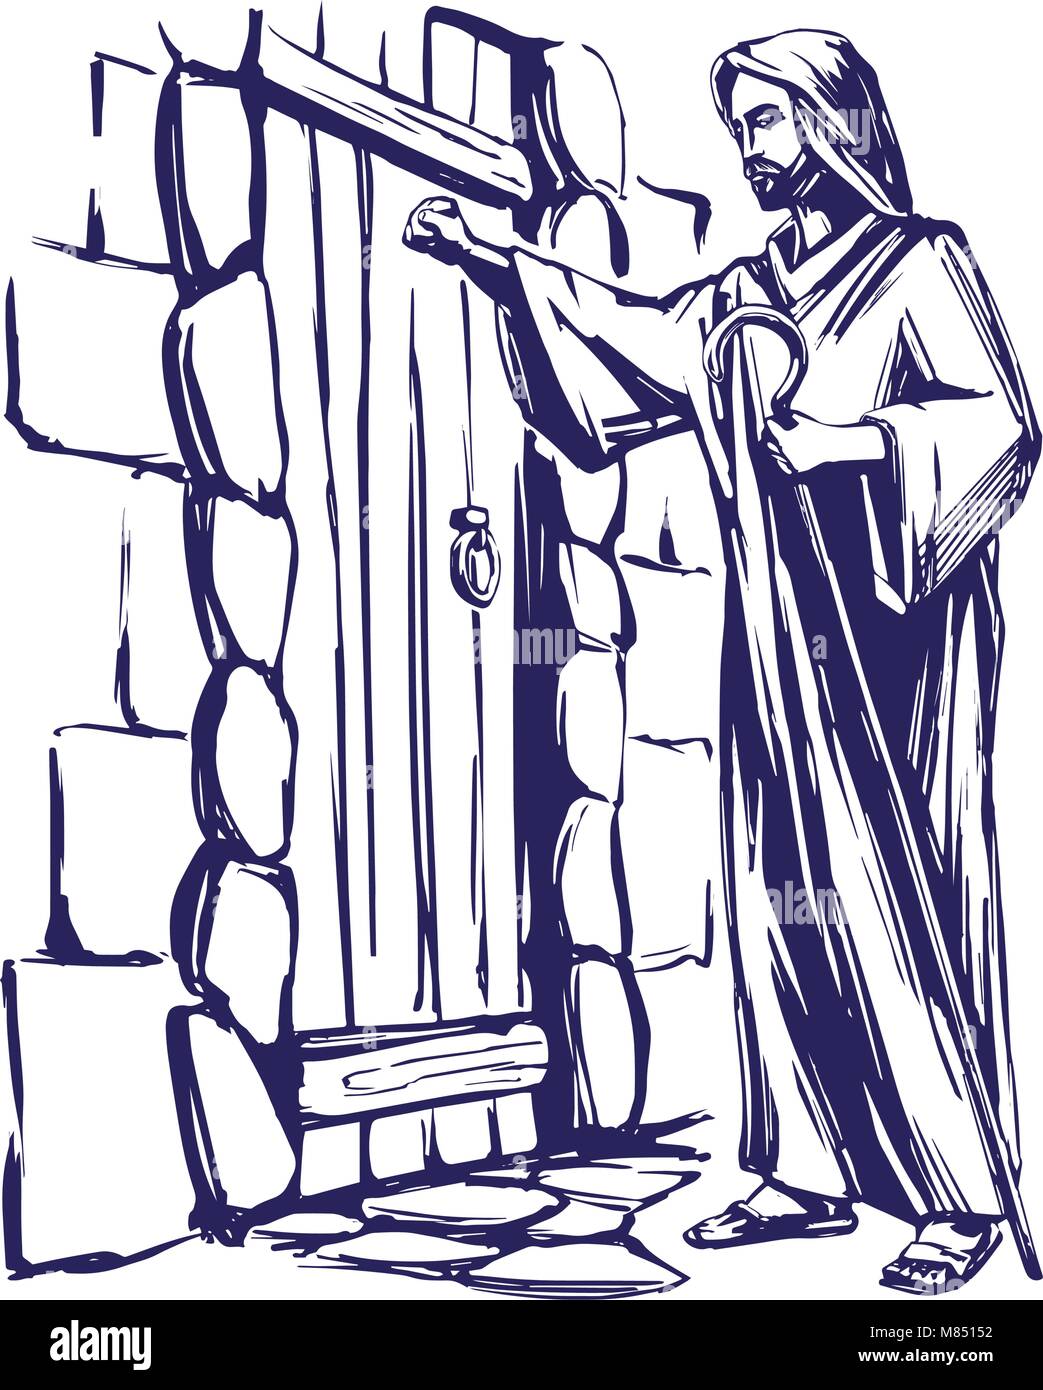 Jésus Christ, Fils de Dieu frappe à la porte, symbole du christianisme hand  drawn vector illustration Image Vectorielle Stock - Alamy